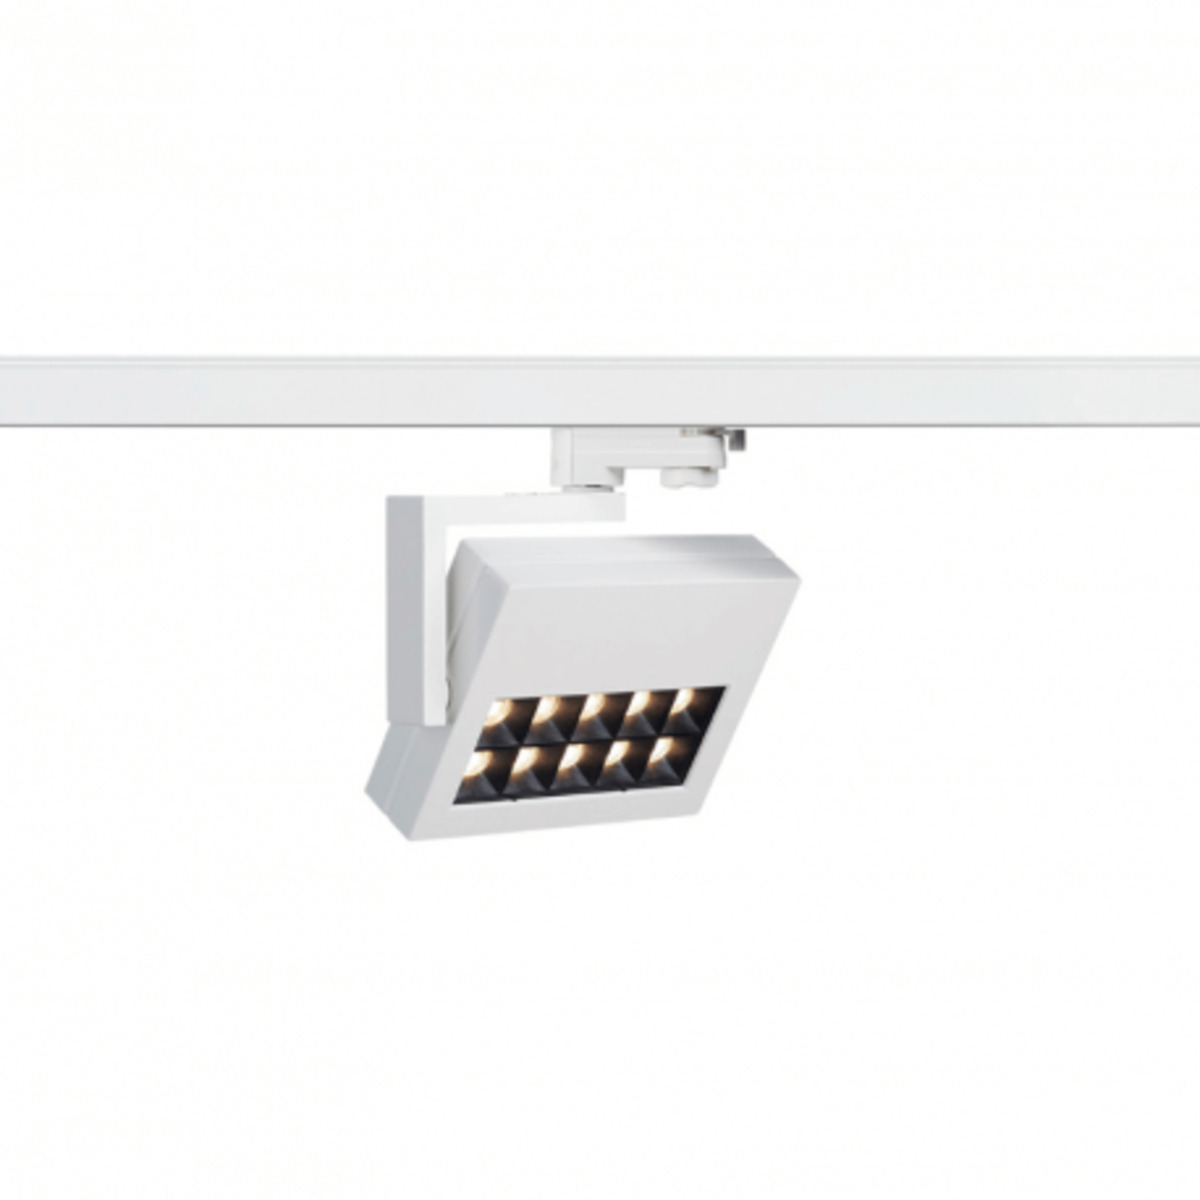 Spot Profuno LED 18W 60D 3000K rectangulaire pour rail 3 allumages - Blanc